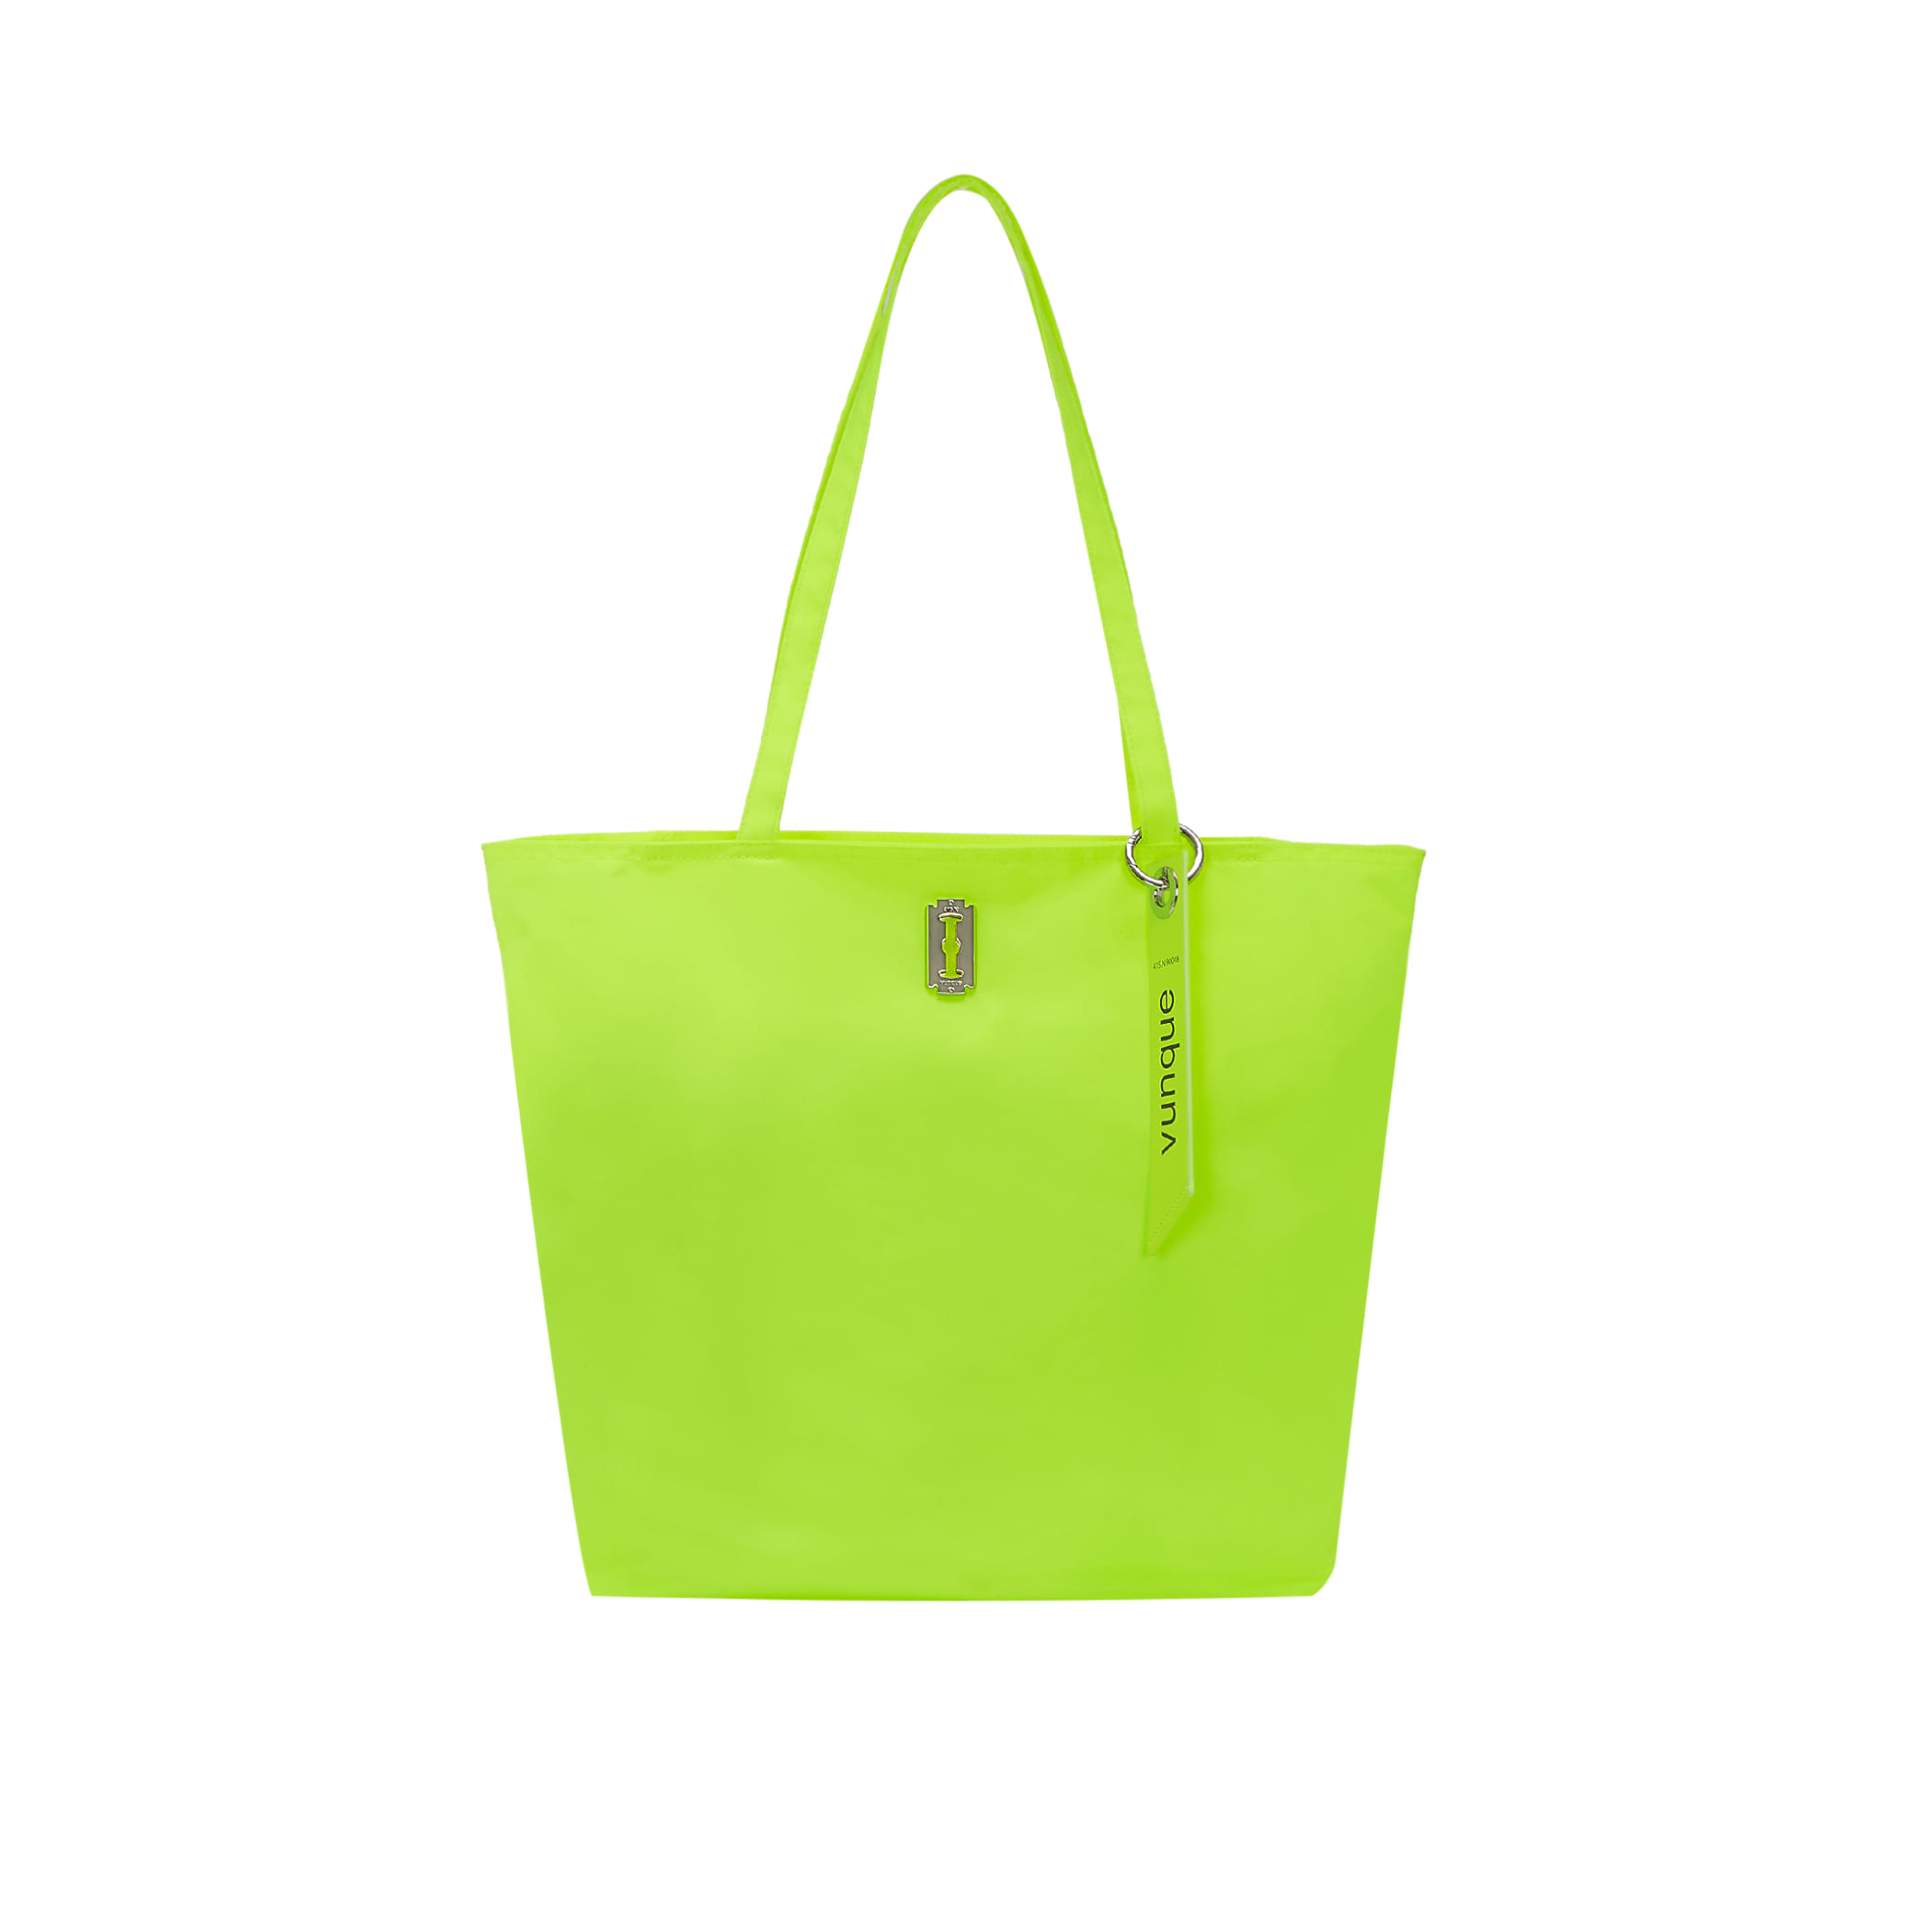 [아울렛] Hey Pass Shopper Bag (헤이 패스 쇼퍼백) Neon yellow